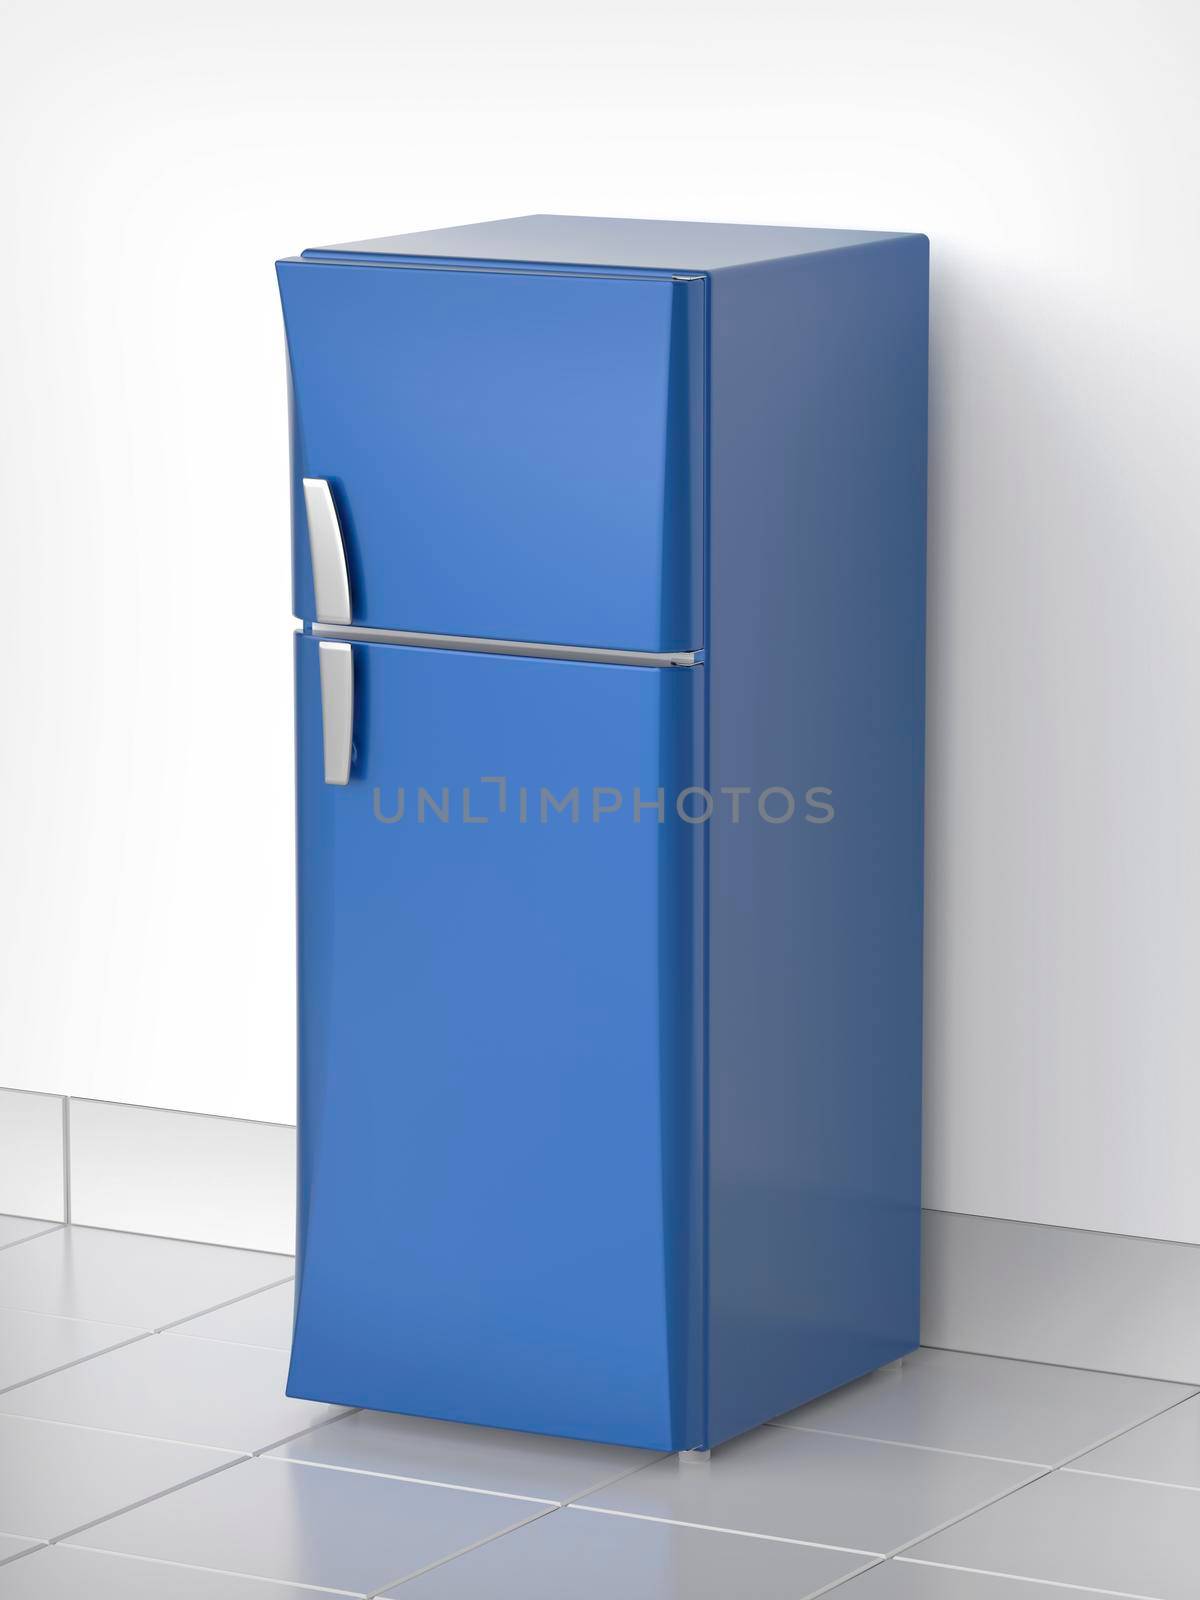 Modern blue refrigerator in the kitchen